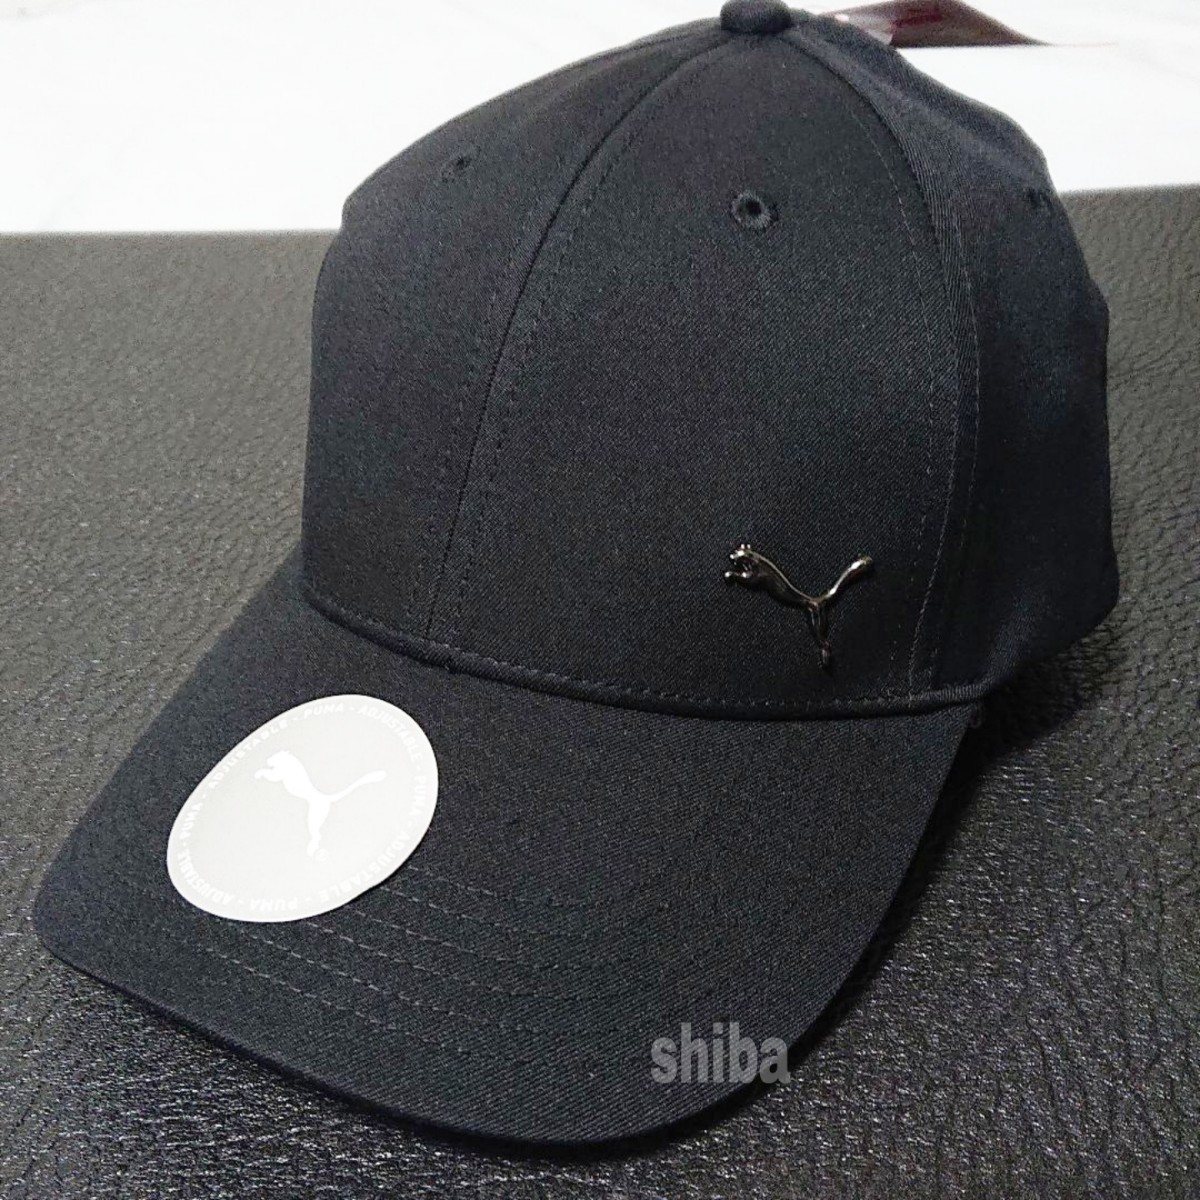 PUMA プーマ キャップ 帽子 ブラック 黒 海外モデル メタルキャットキャップ ユニセックス ワンサイズ フリーサイズ